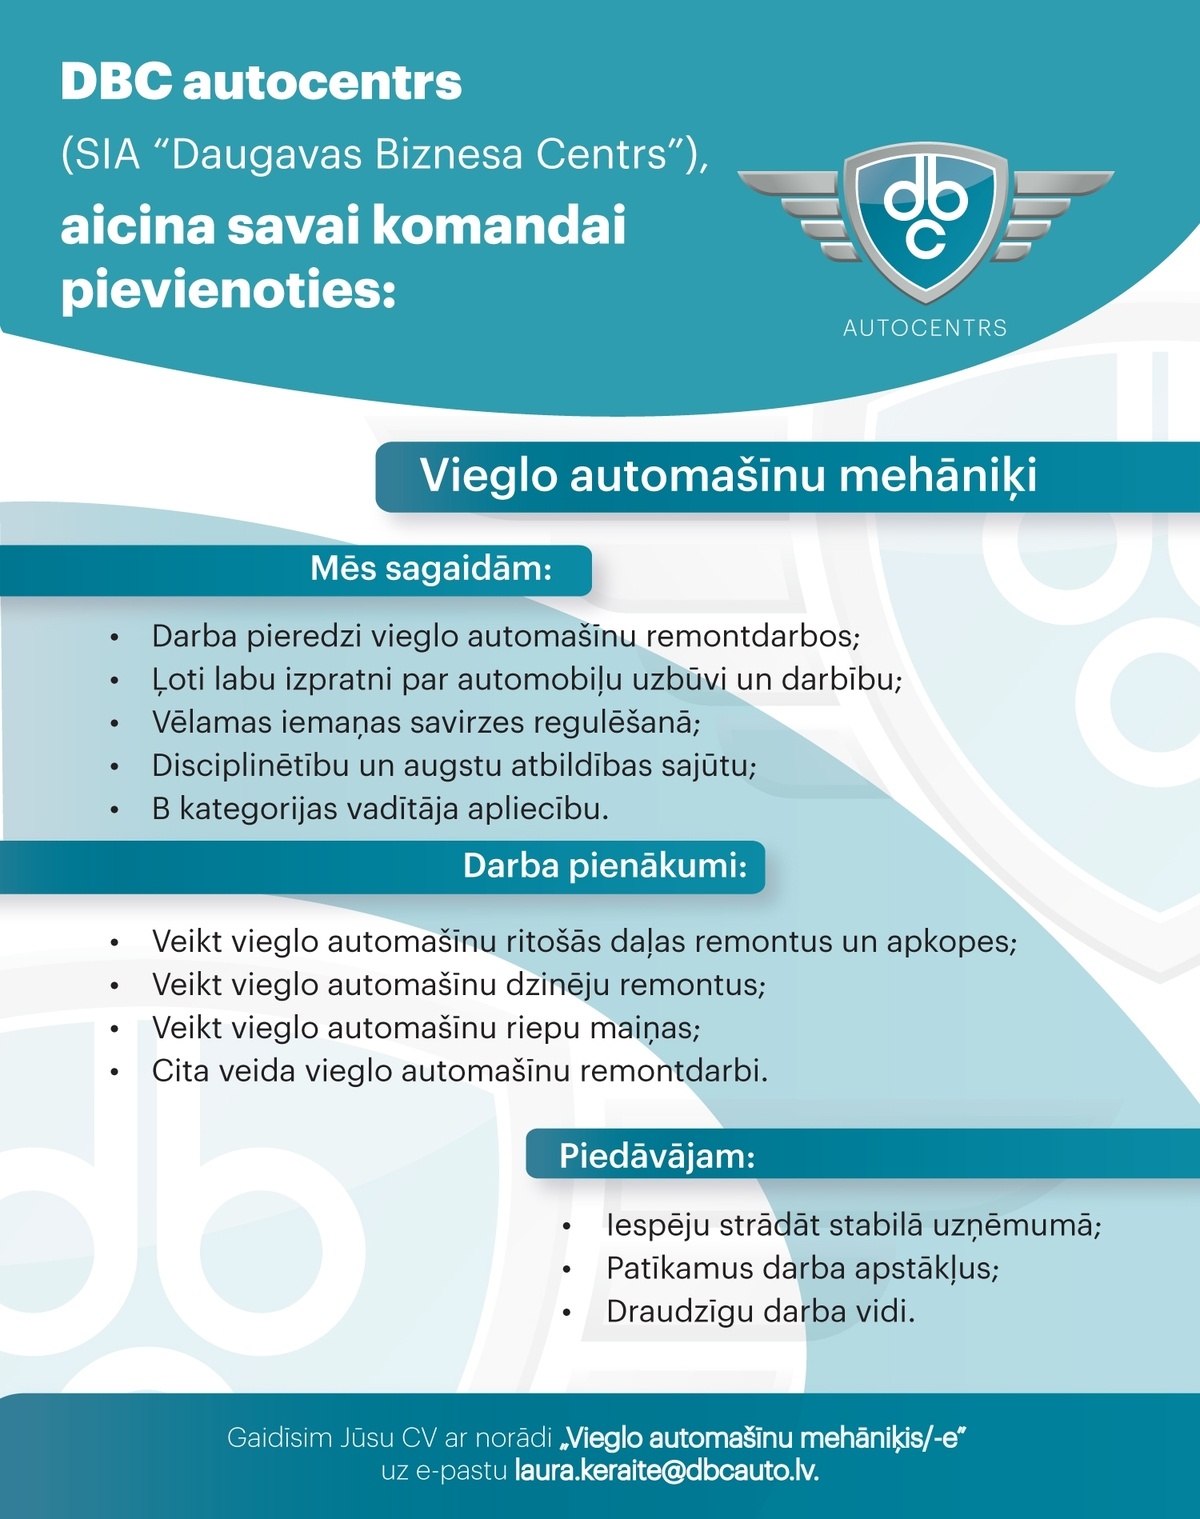 DBC autocentrs (SIA "Daugavas Biznesa Centrs) vieglo auto serviss Vieglo automašīnu mehāniķis/-e